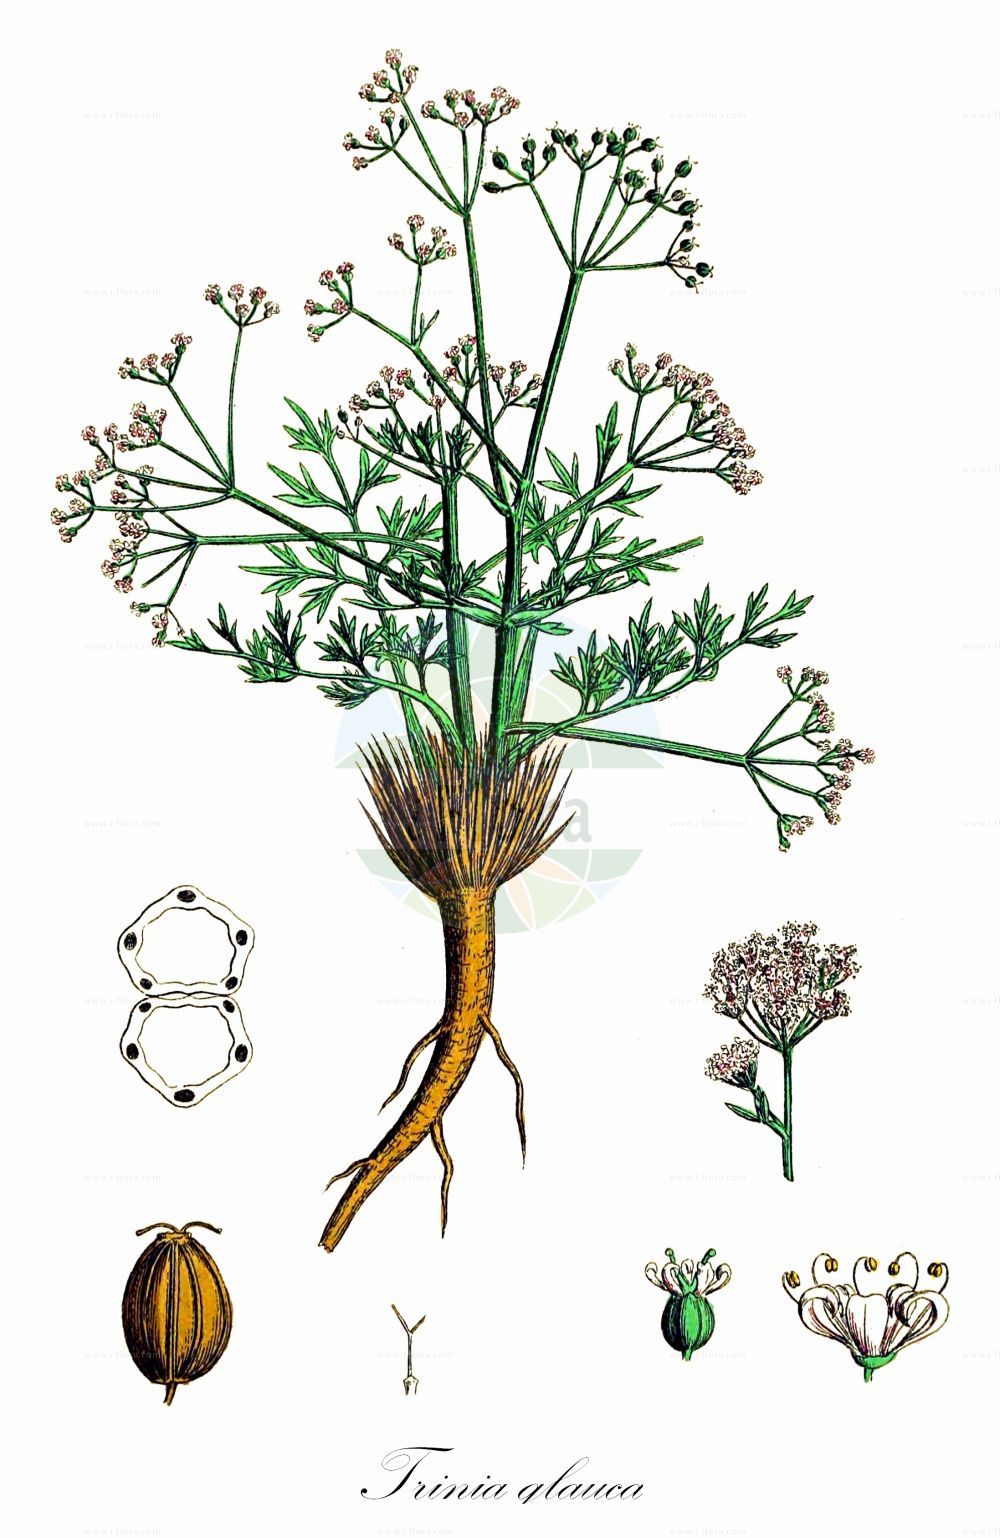 Historische Abbildung von Trinia glauca (Blaugrüner Faserschirm - Honewort). Das Bild zeigt Blatt, Bluete, Frucht und Same. ---- Historical Drawing of Trinia glauca (Blaugrüner Faserschirm - Honewort). The image is showing leaf, flower, fruit and seed.(Trinia glauca,Blaugrüner Faserschirm,Honewort,Pimpinella glauca,Trinia glauca,Blaugruener Faserschirm,Kleiner Faserschirm,Honewort,Trinia,Faserschirm,Honewort,Apiaceae,Doldengewächse,Carrot family,Blatt,Bluete,Frucht,Same,leaf,flower,fruit,seed,Sowerby (1790-1813))